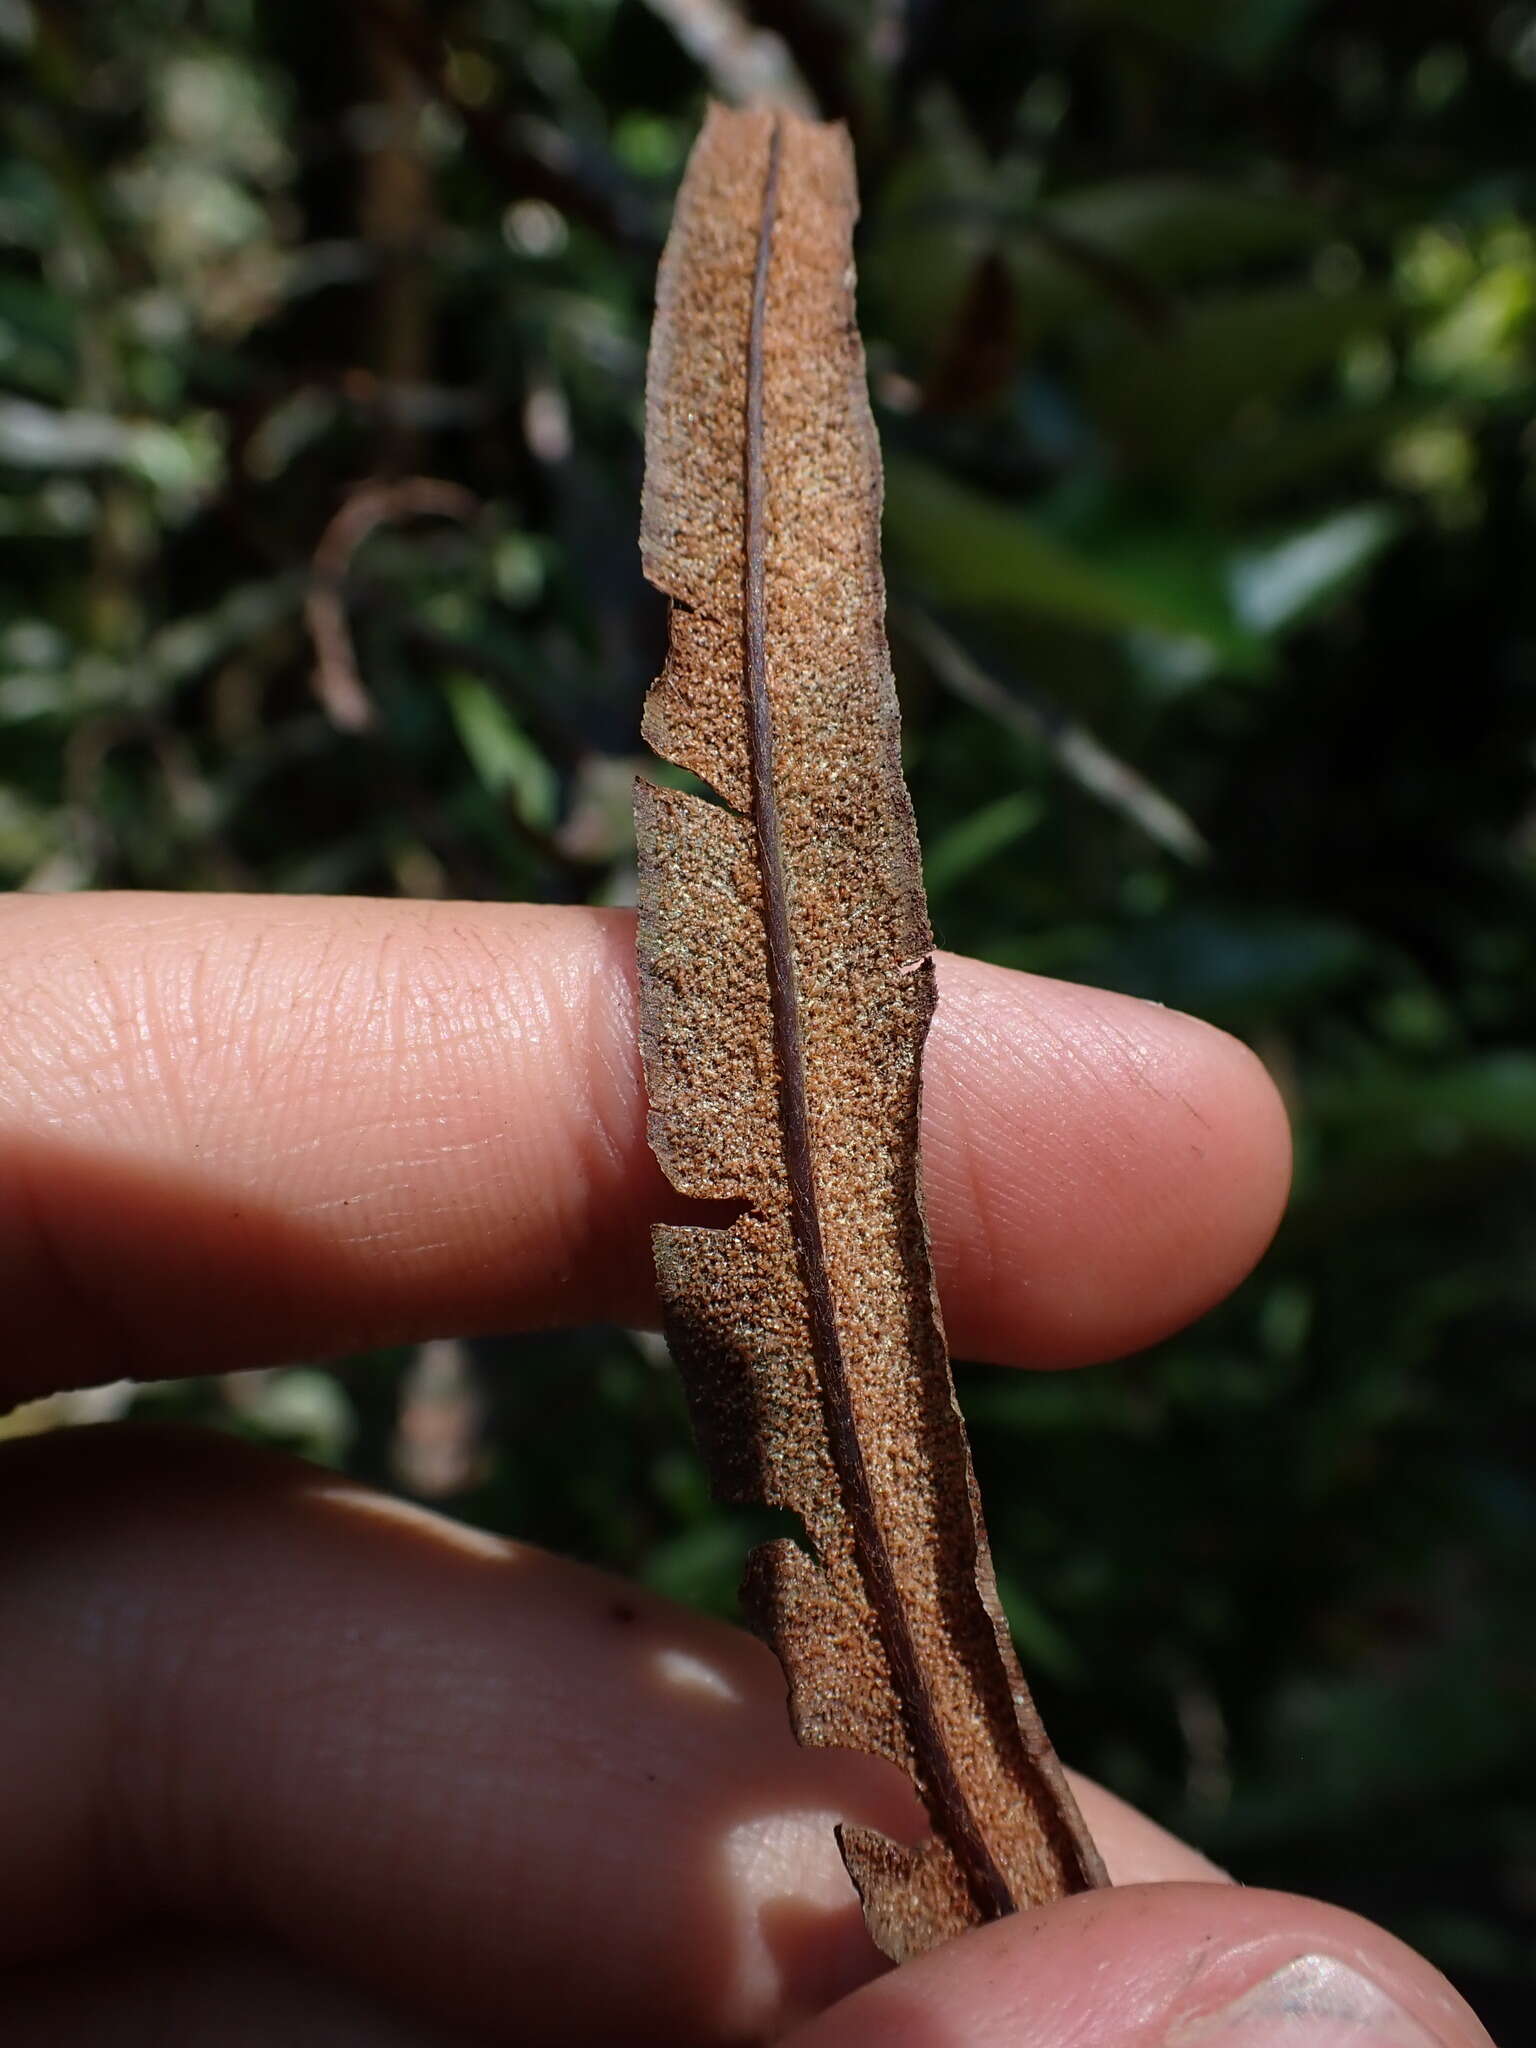 Pityrogramma trifoliata (L.) R. Tryon的圖片